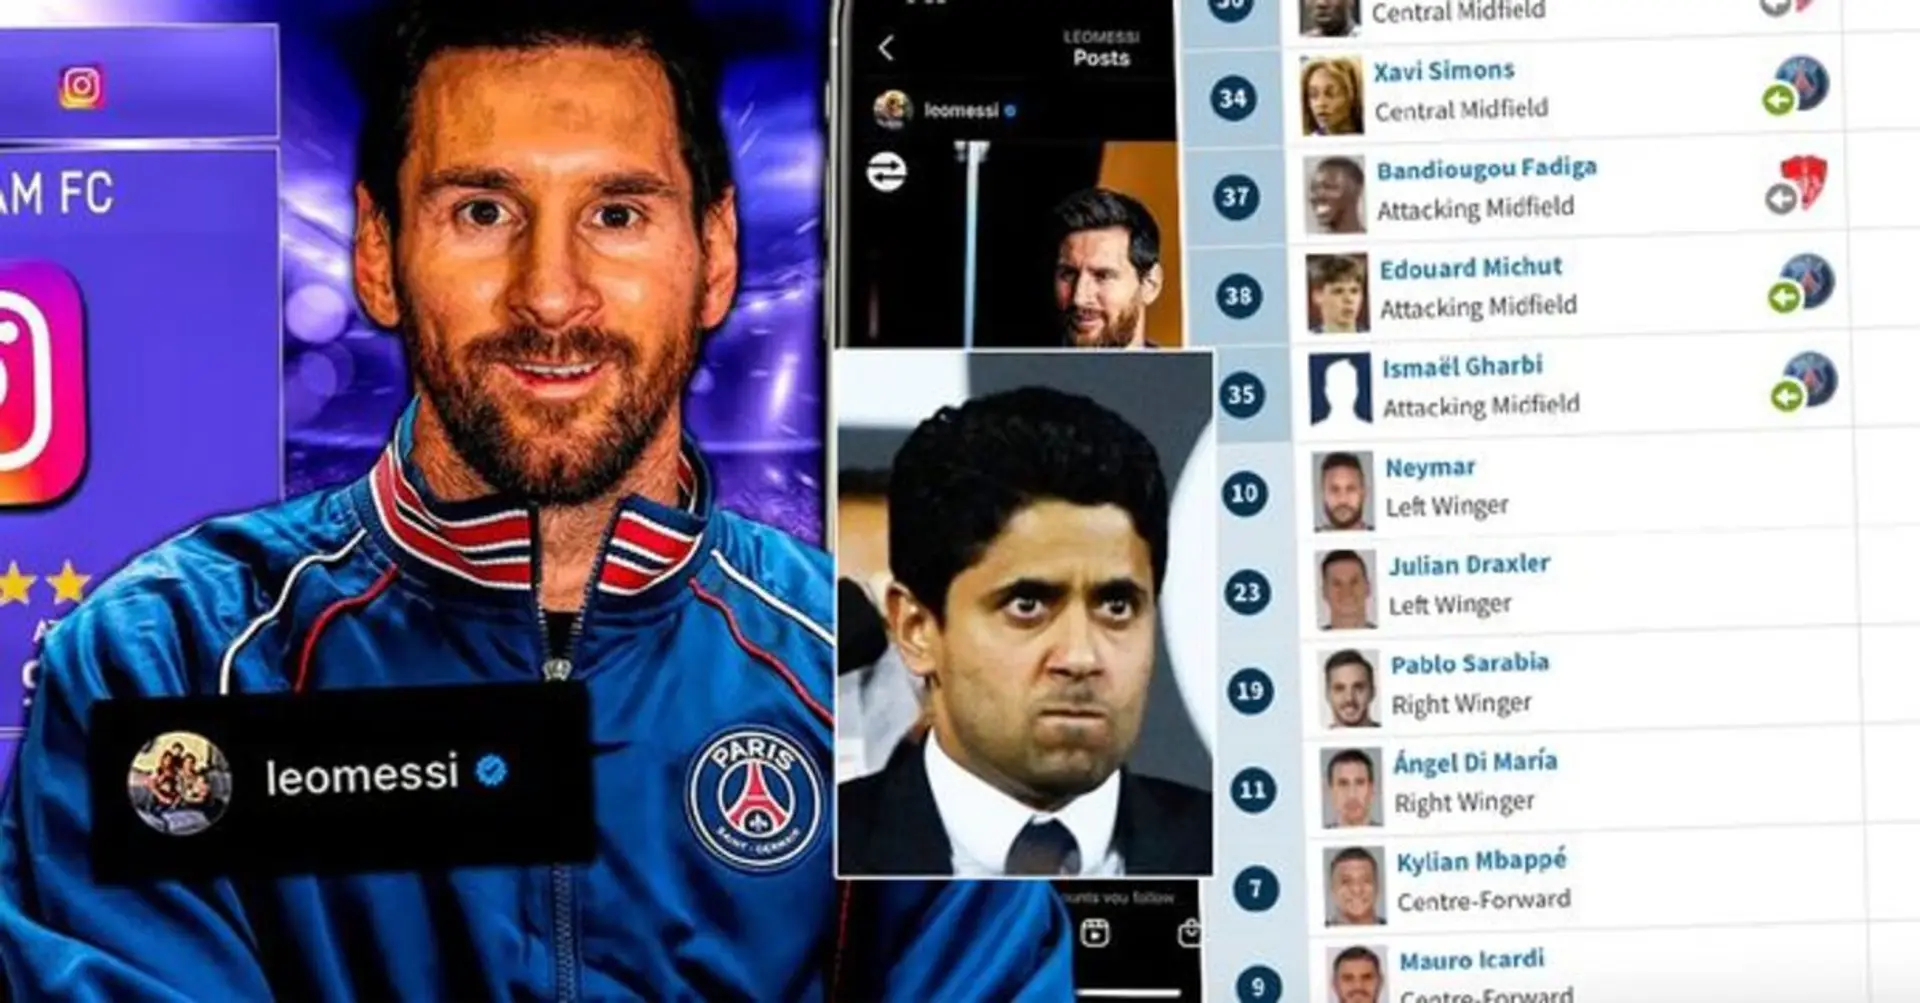 El PSG está listo para vender 10 (¡DIEZ!) jugadores tras el fichaje de Lionel Messi - 6 nombres revelados